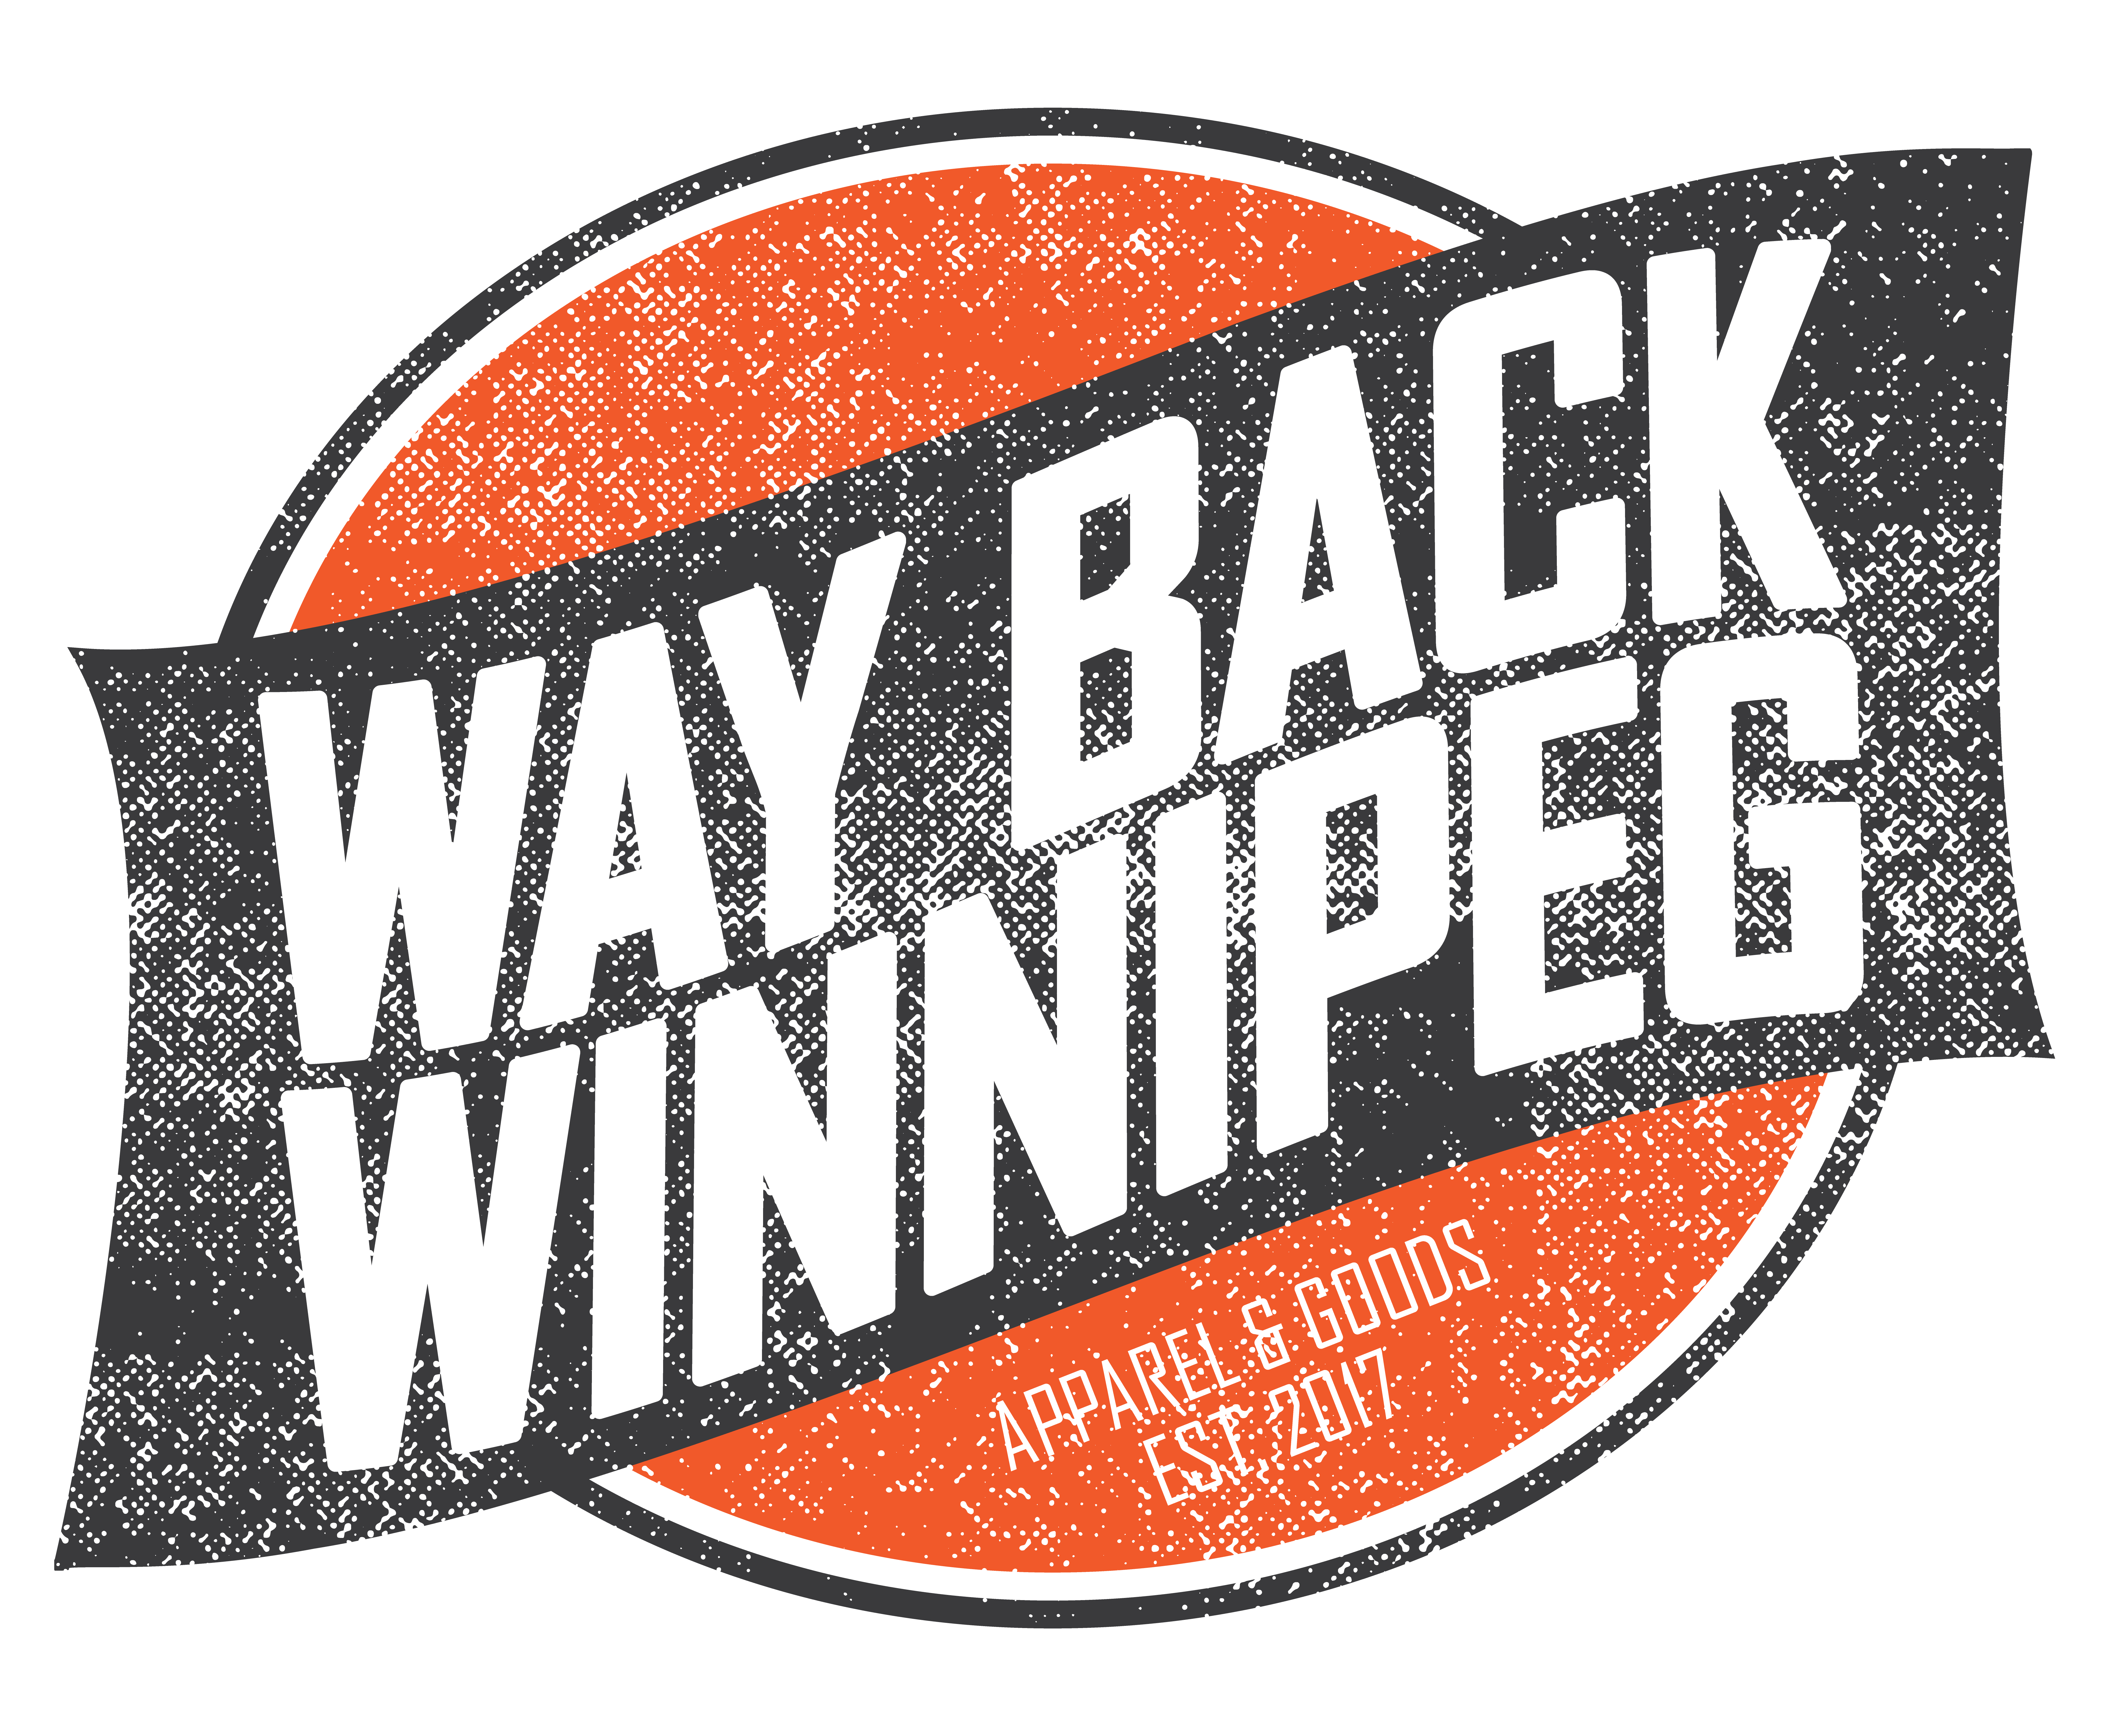 Way Back Winnipeg